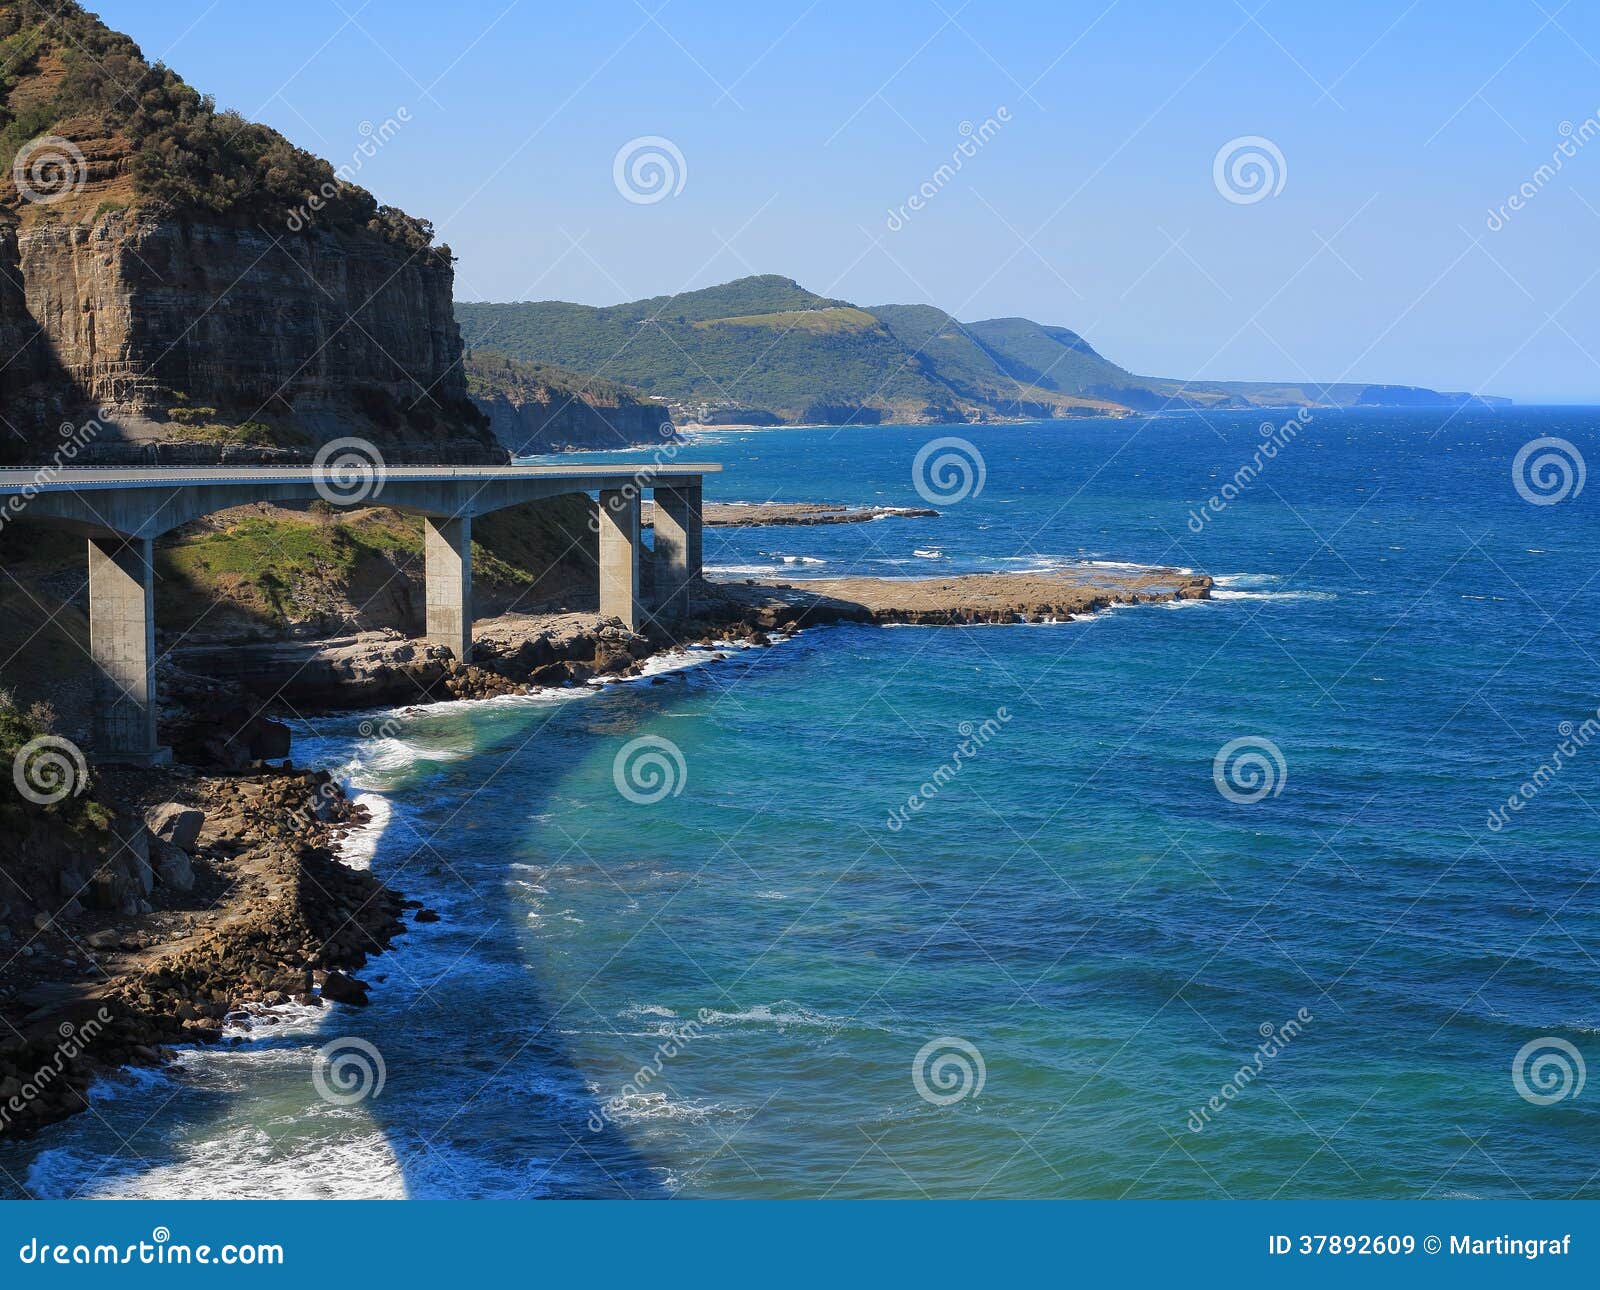 scenic coast with sea cliff bridge